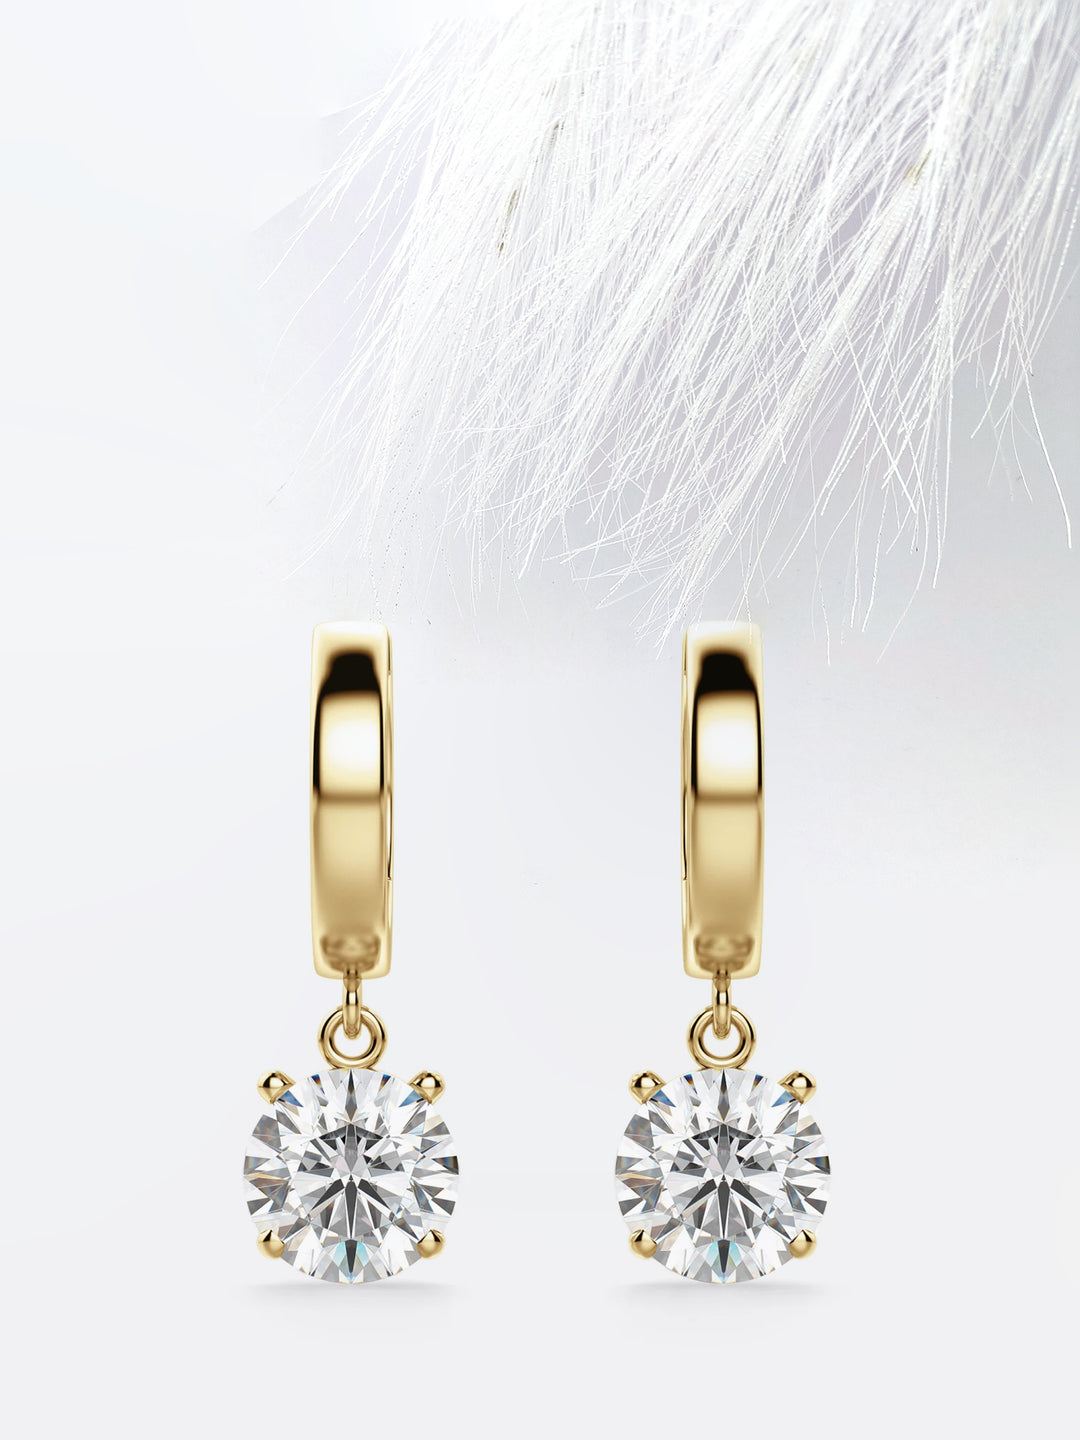 Round Cut Moissanite Drop Diamond Earrings for Women